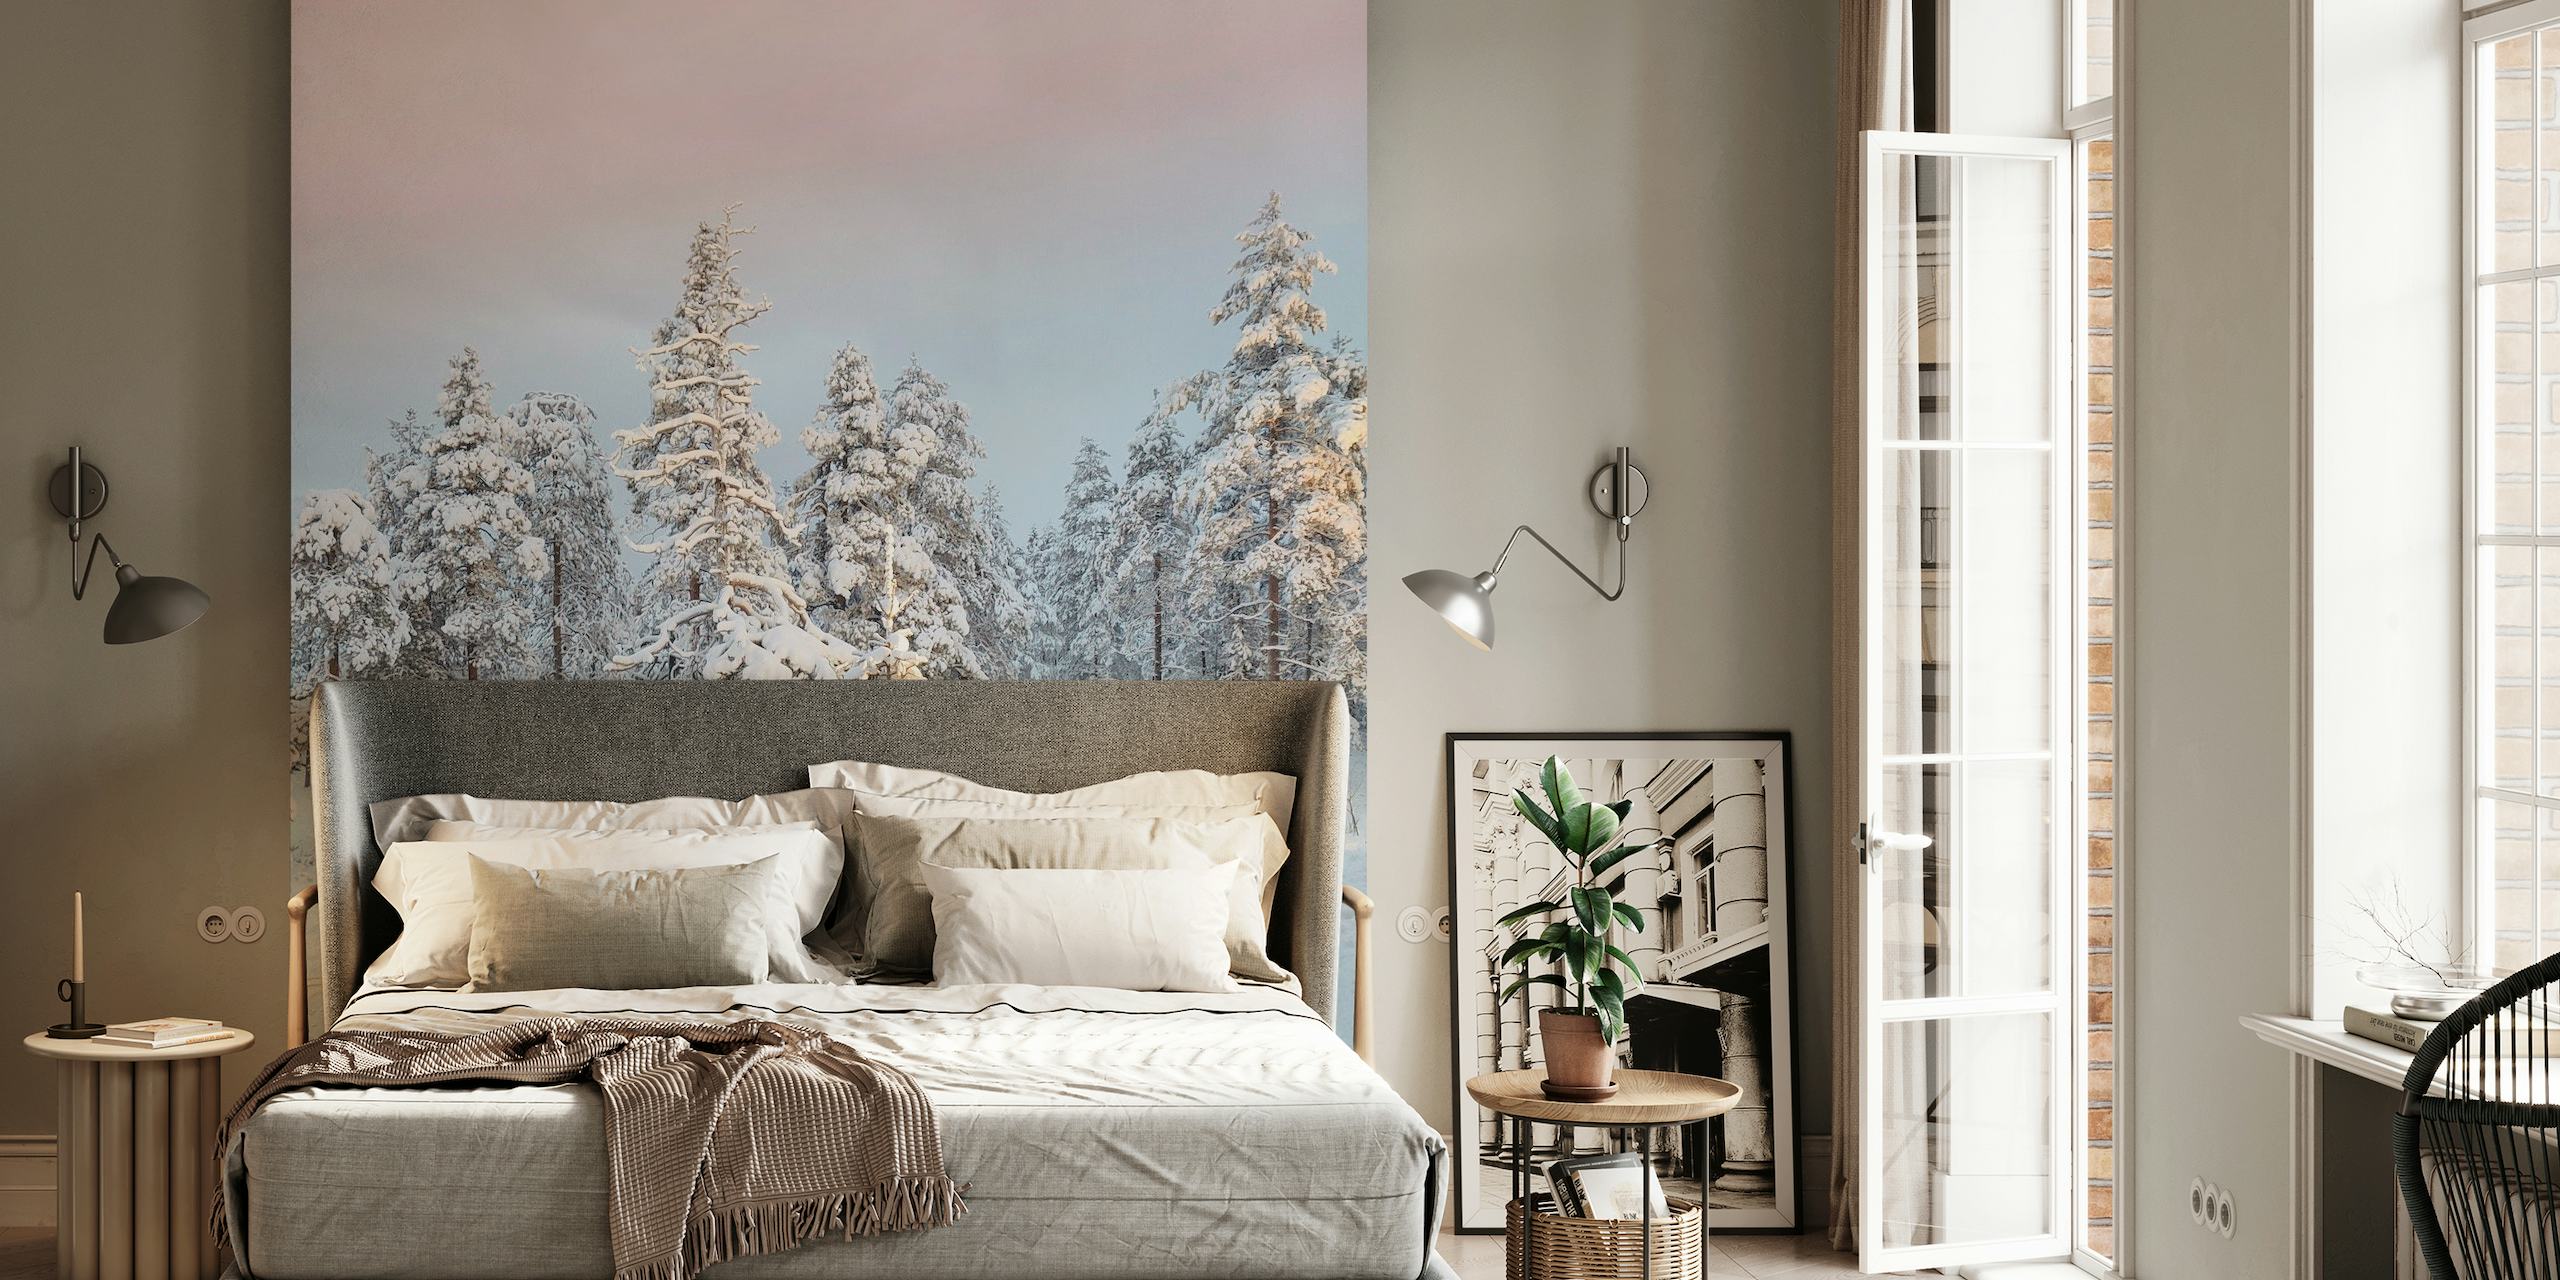 Besneeuwd berglandschap met bevroren bomen tegen een rustige hemelmuurschildering